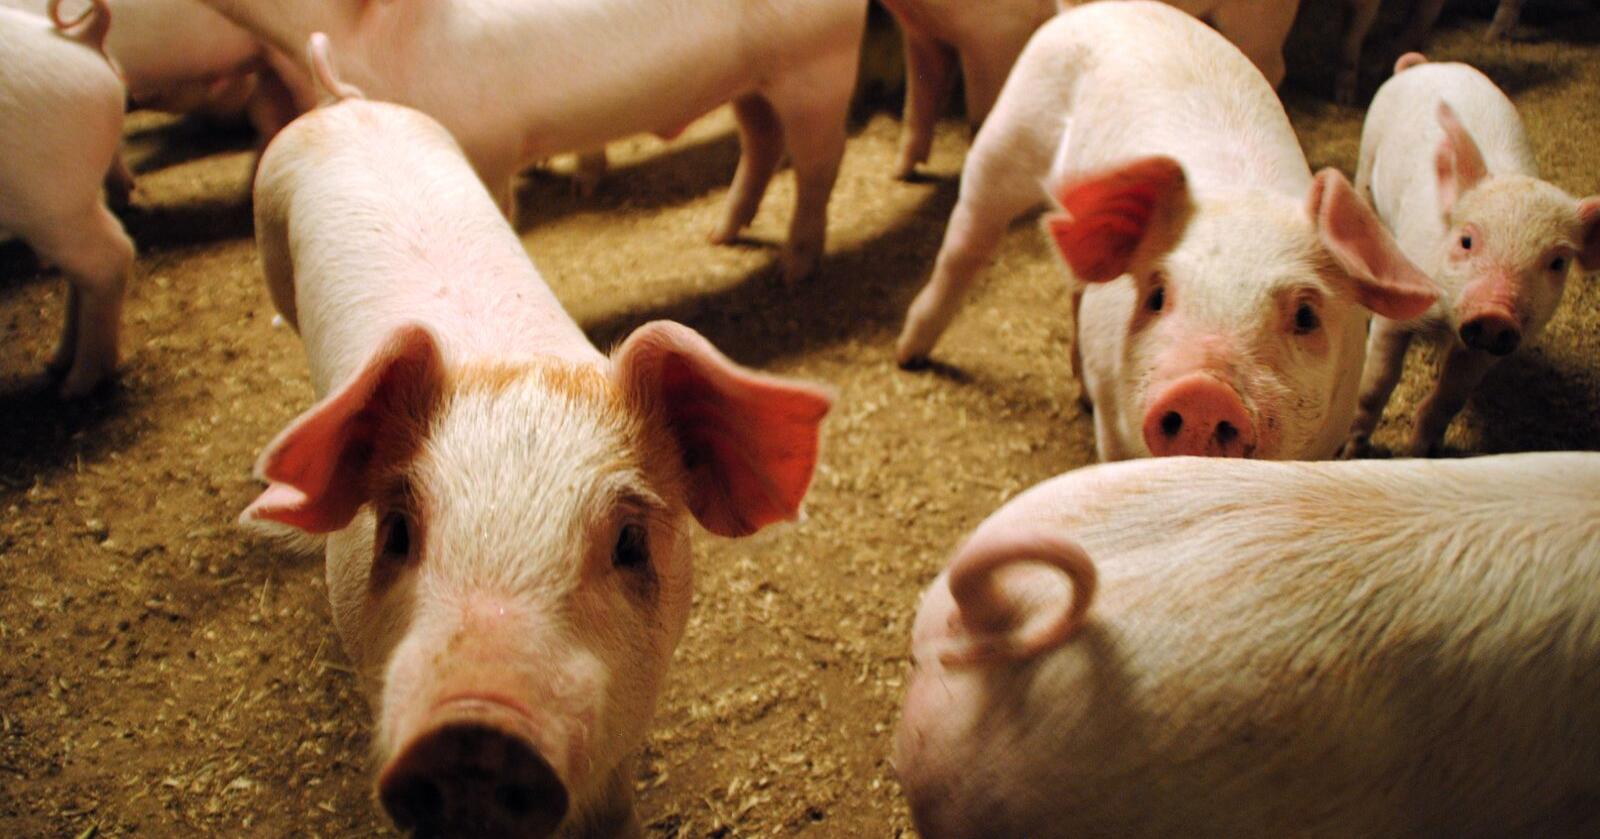 Dyrevelferd: Mye har skjedd  de siste årene rundt velferd for grisen, skriver kronikkforfatteren. Illustrasjonsfoto: Lars Bilit Hagen 